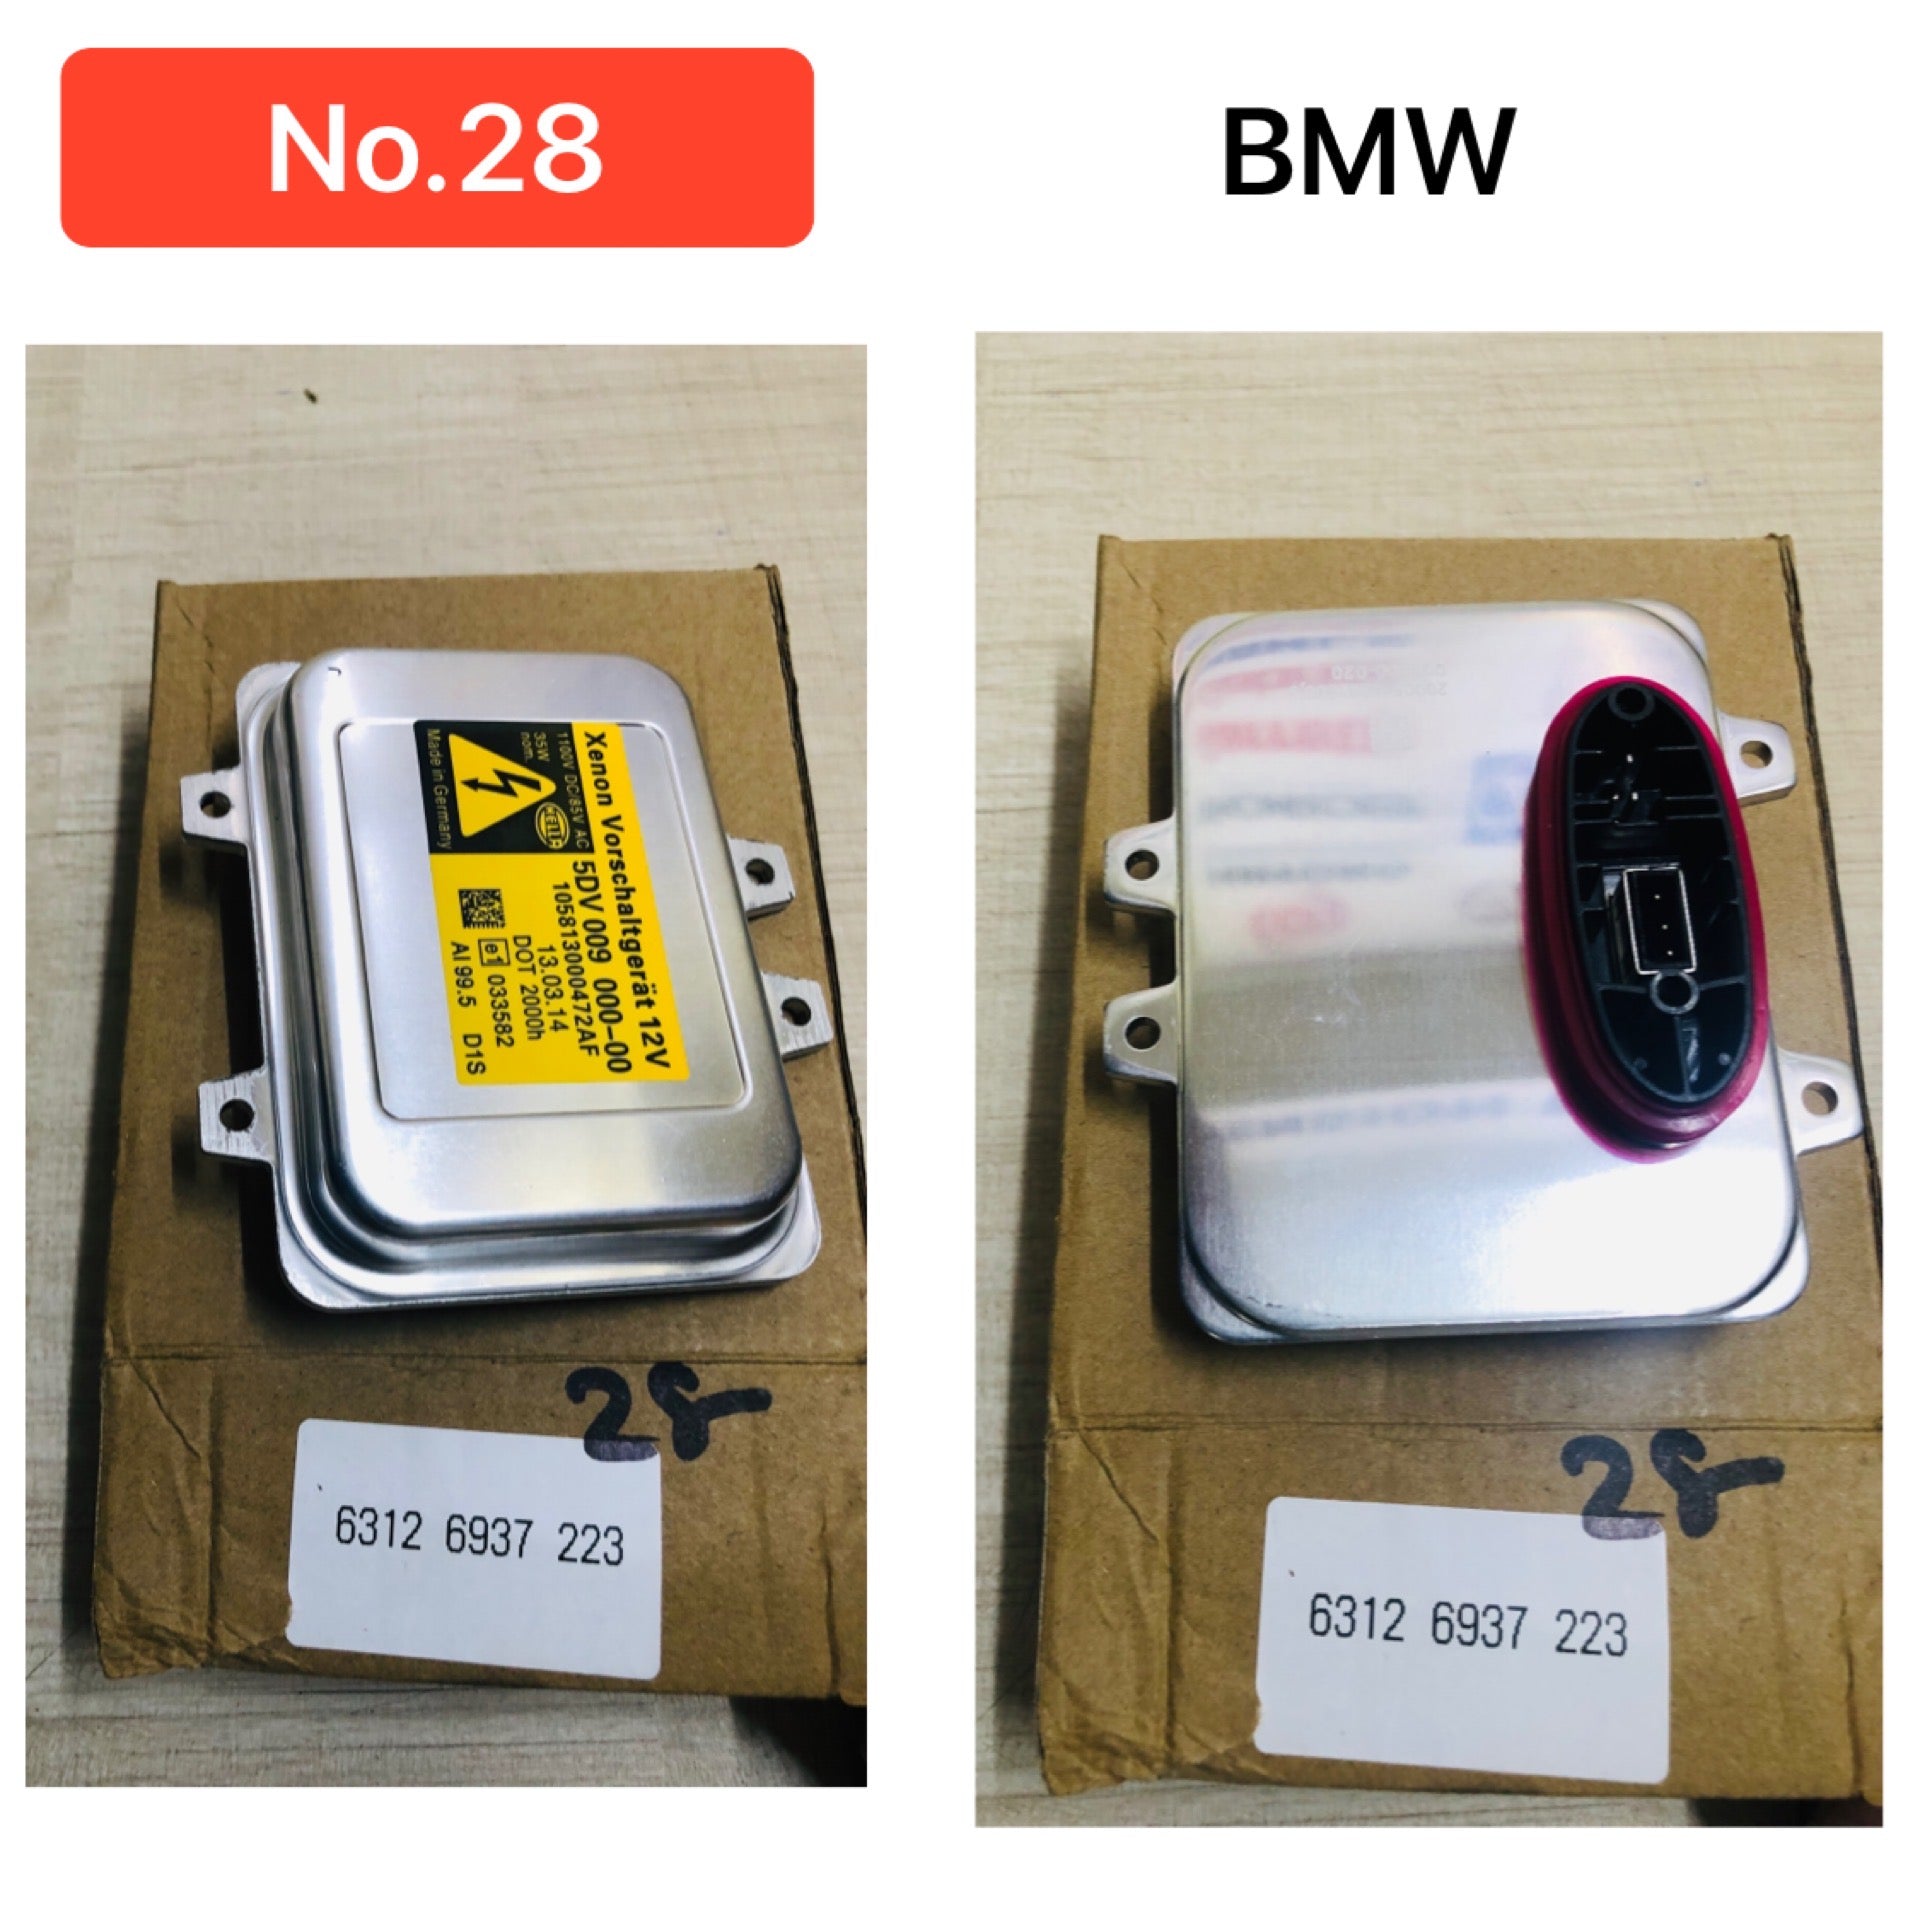 Headlight Ballast Control Unit 63126937223 For BMW 5 Series E60 Tag-BL-28